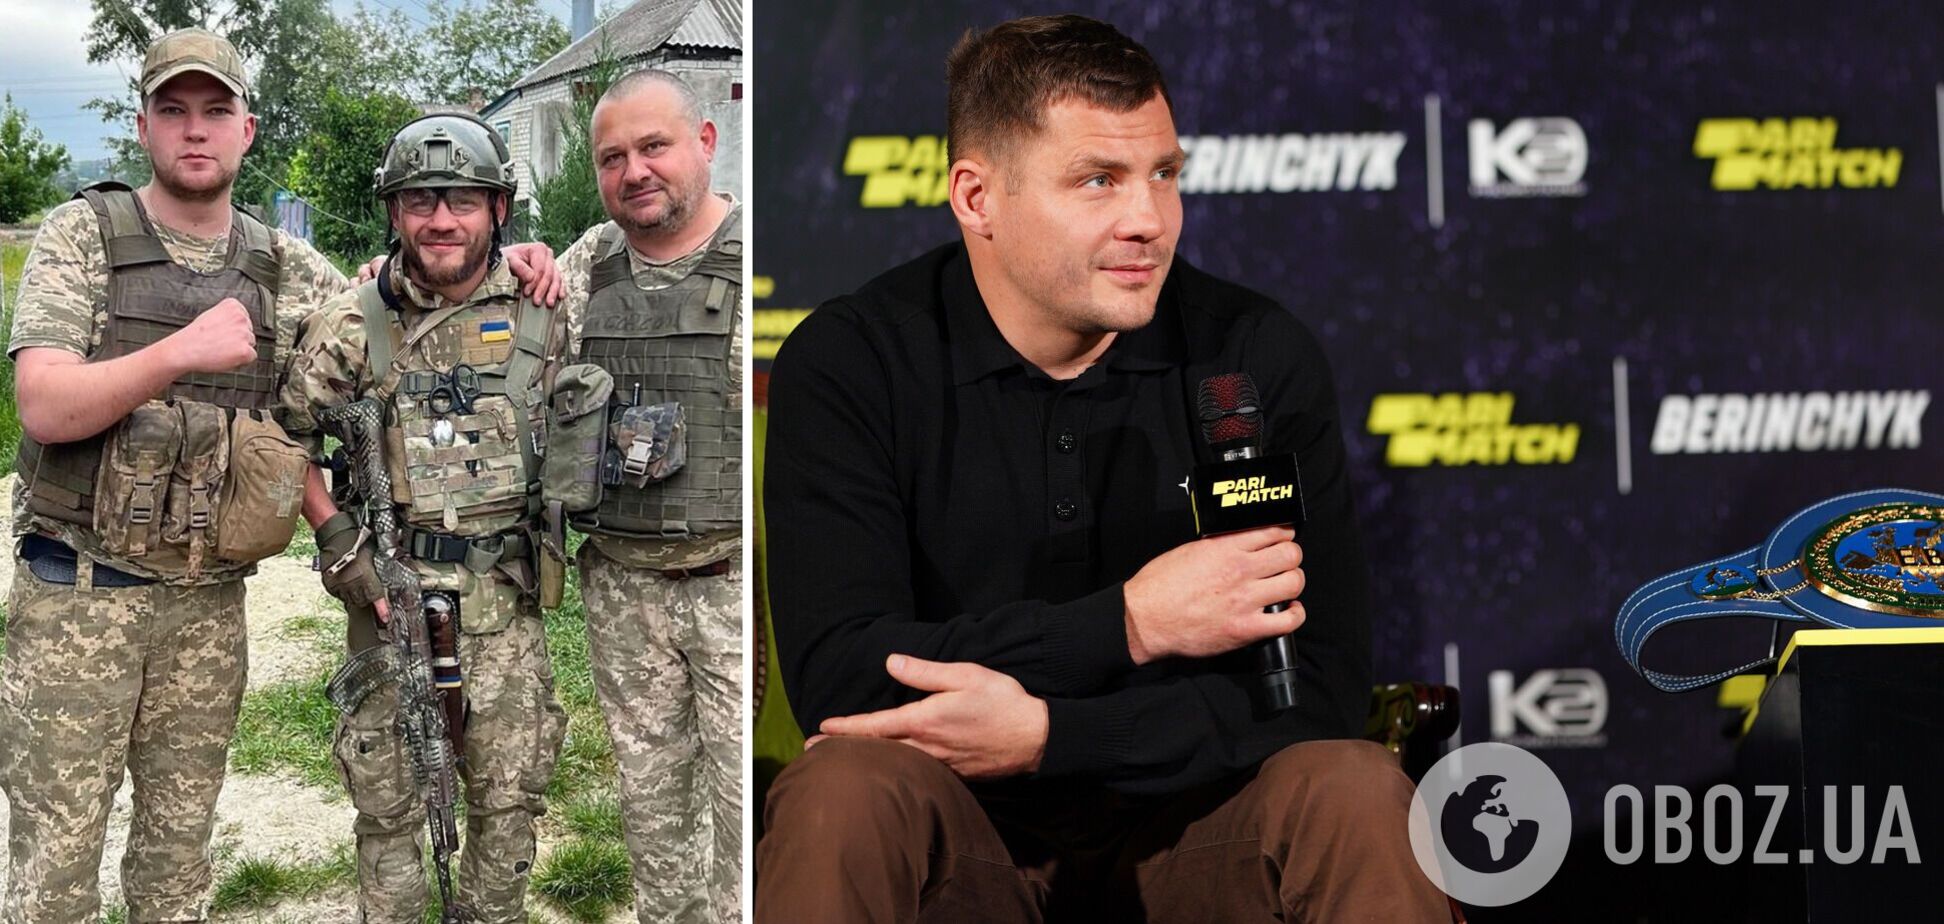 'Сказали: 'Расстреляем': украинский боксер рассказал о попытке вступить в 'Кракен' и мотивации от ВСУ перед боем в Лондоне